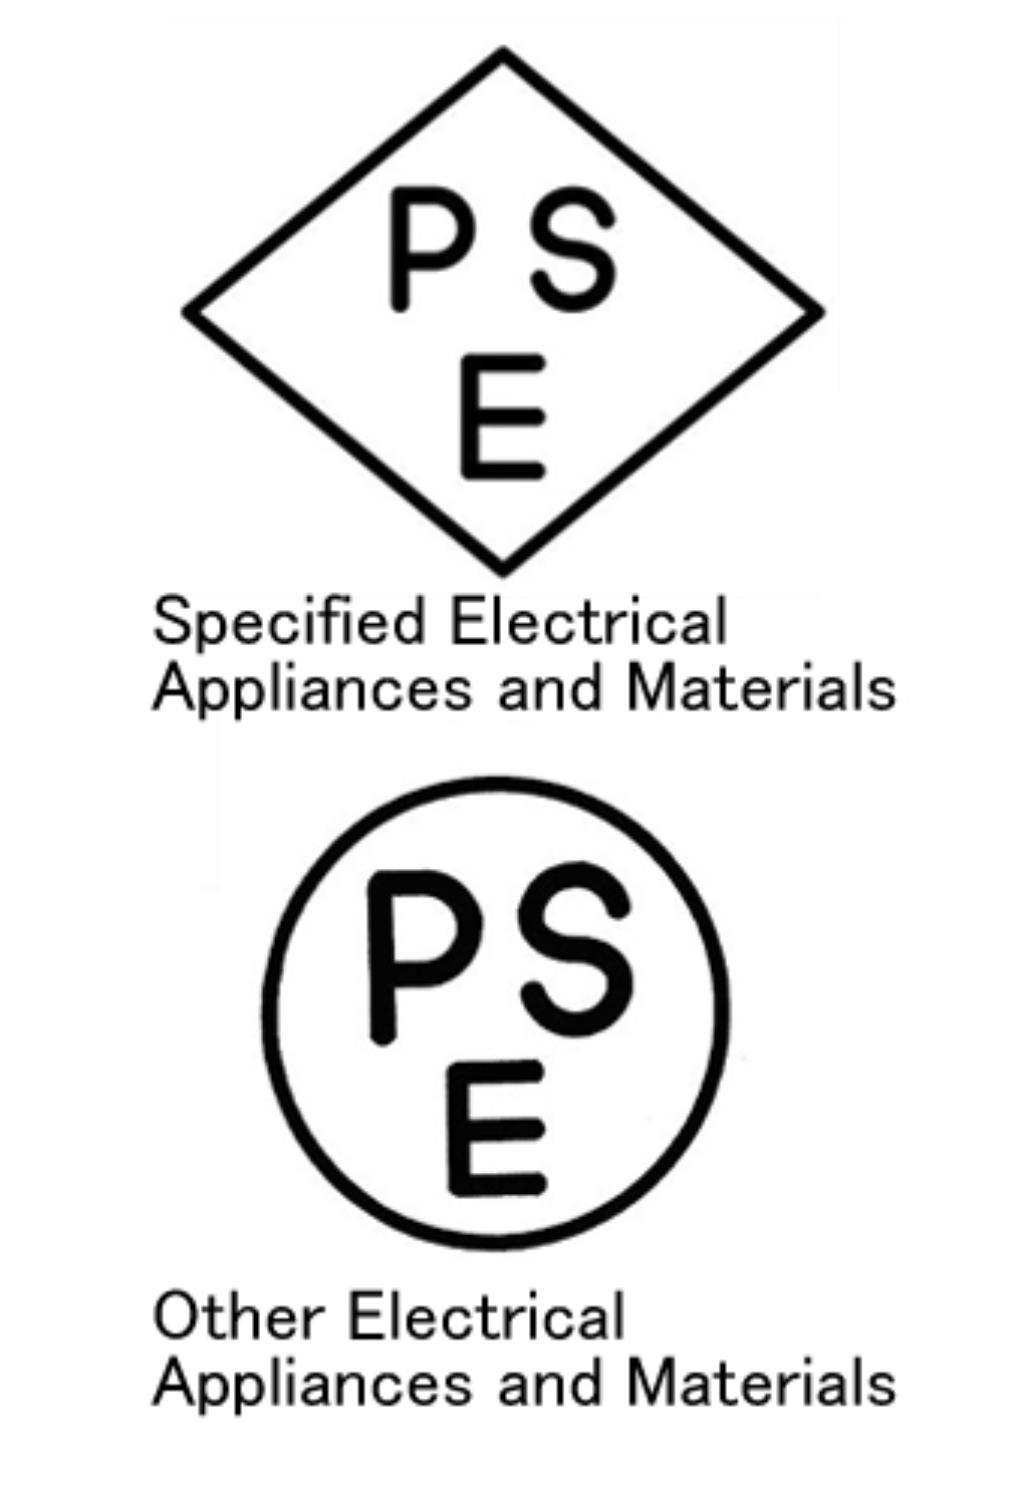 PSE Logo - PSE (DENAN) And S Mark Certification For Japan. WO. TÜV Rheinland